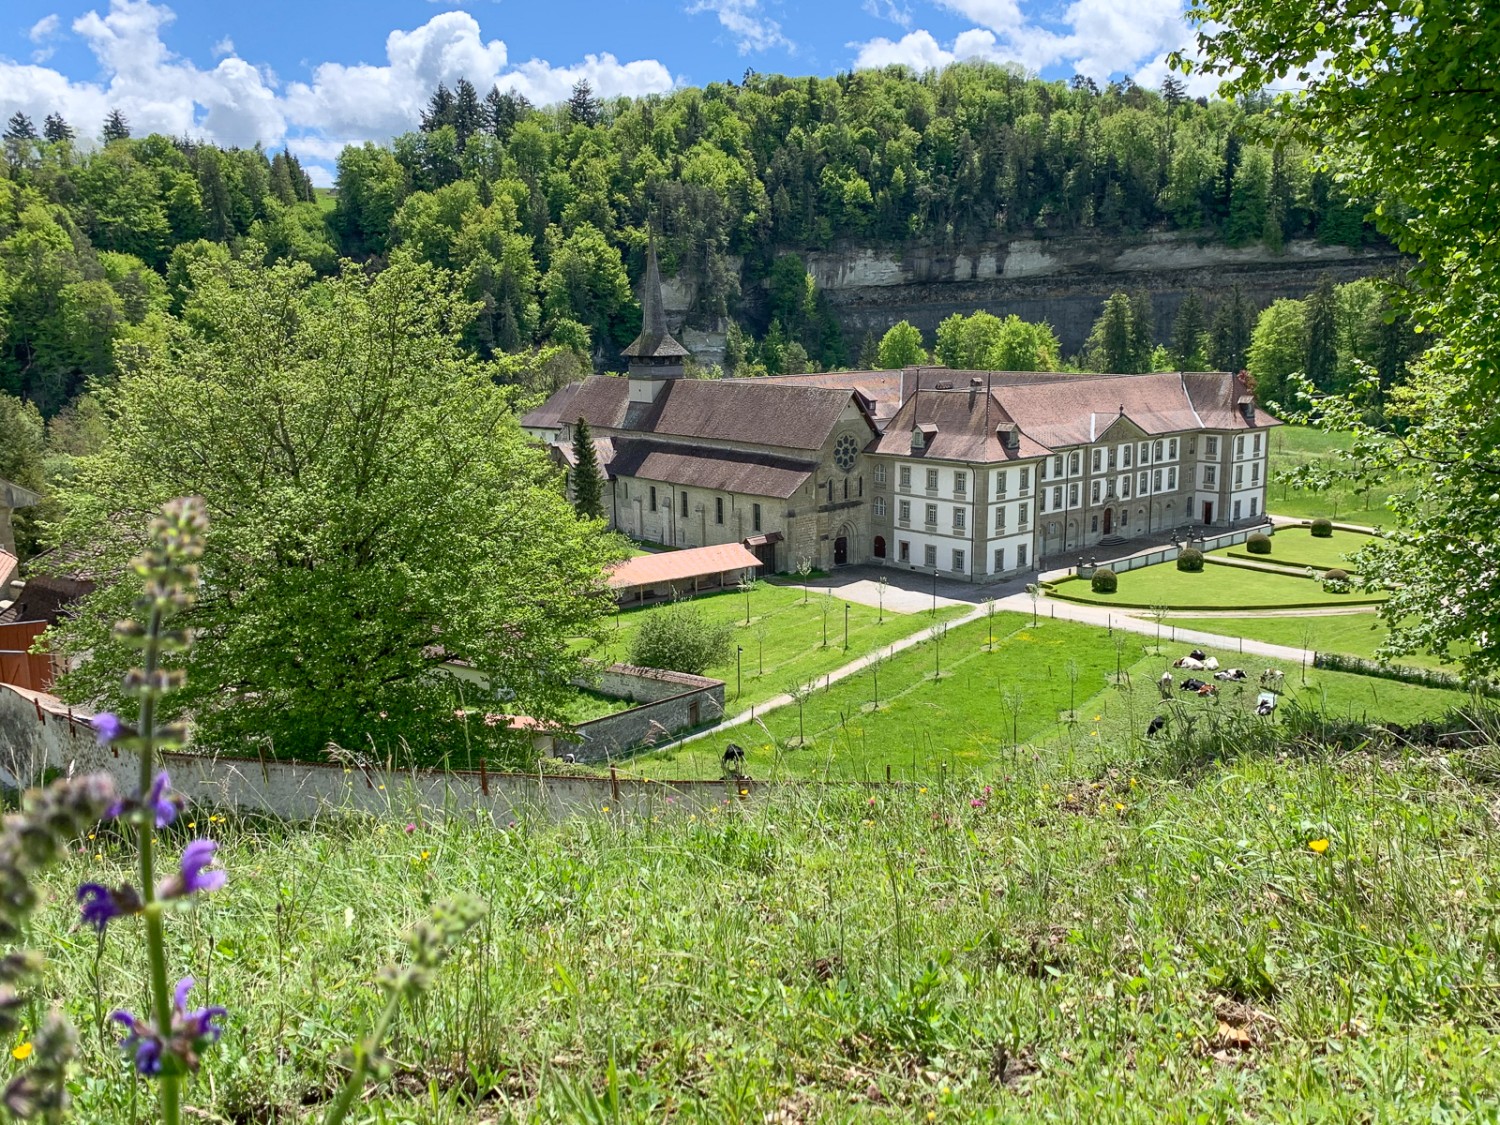 Poco dopo l’Institut Agricole Grangeneuve si può godere di un’incantevole veduta sul monastero di Hauterive. Foto: Monika Leuenberger